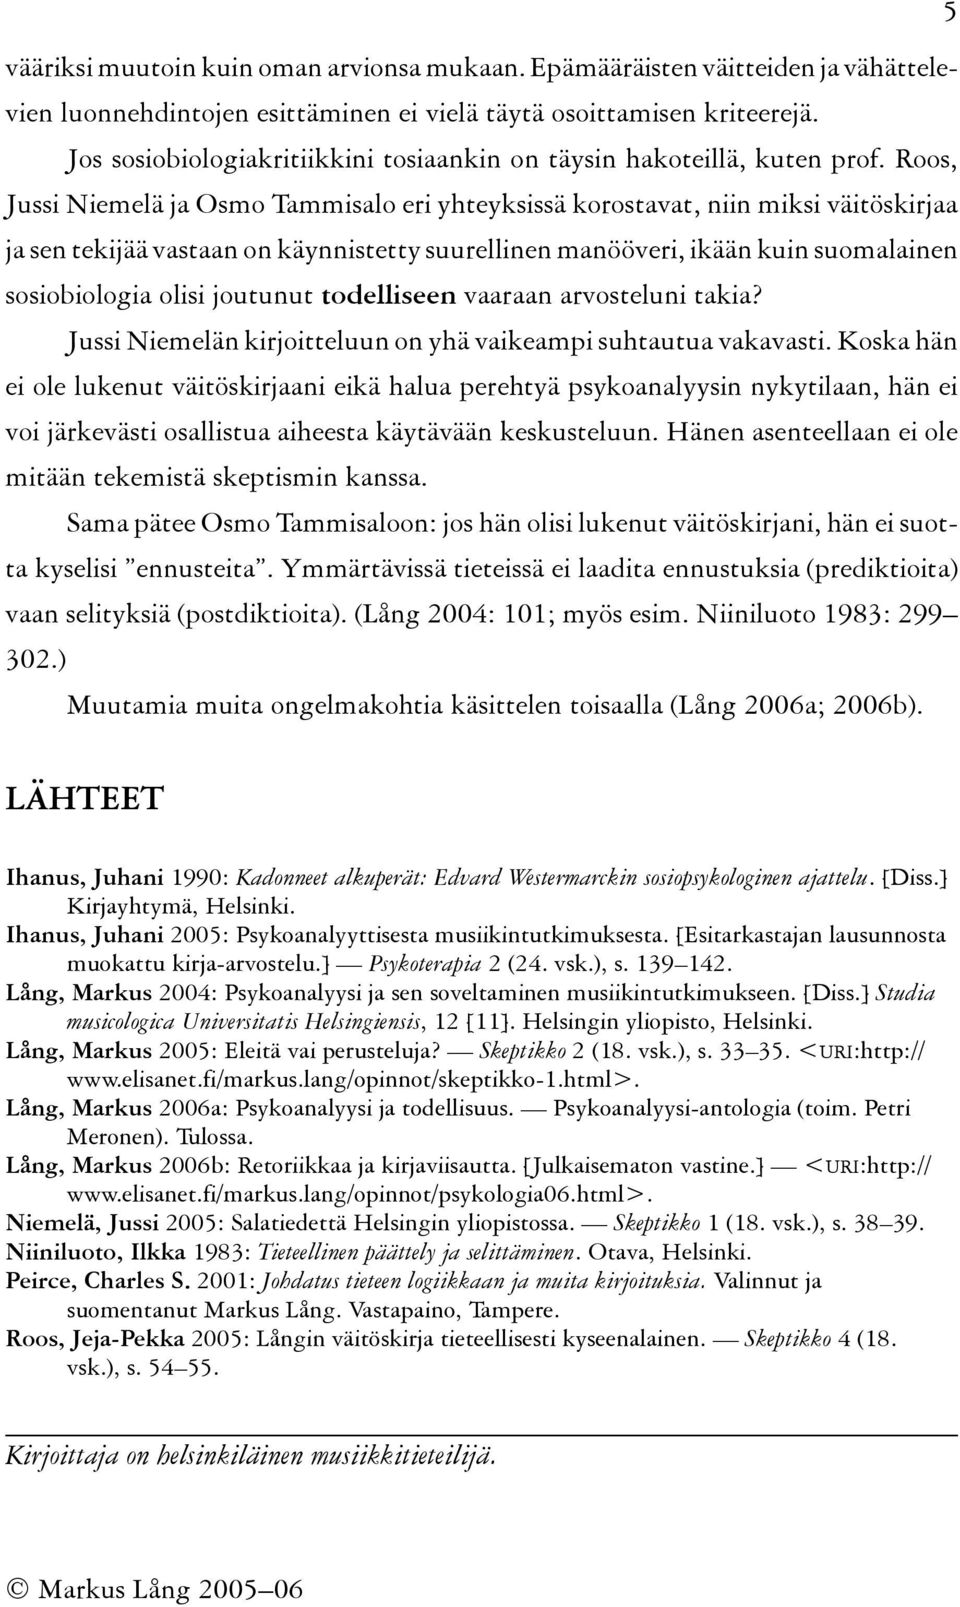 Roos, Jussi Niemelä ja Osmo Tammisalo eri yhteyksissä korostavat, niin miksi väitöskirjaa ja sen tekijää vastaan on käynnistetty suurellinen manööveri, ikään kuin suomalainen sosiobiologia olisi